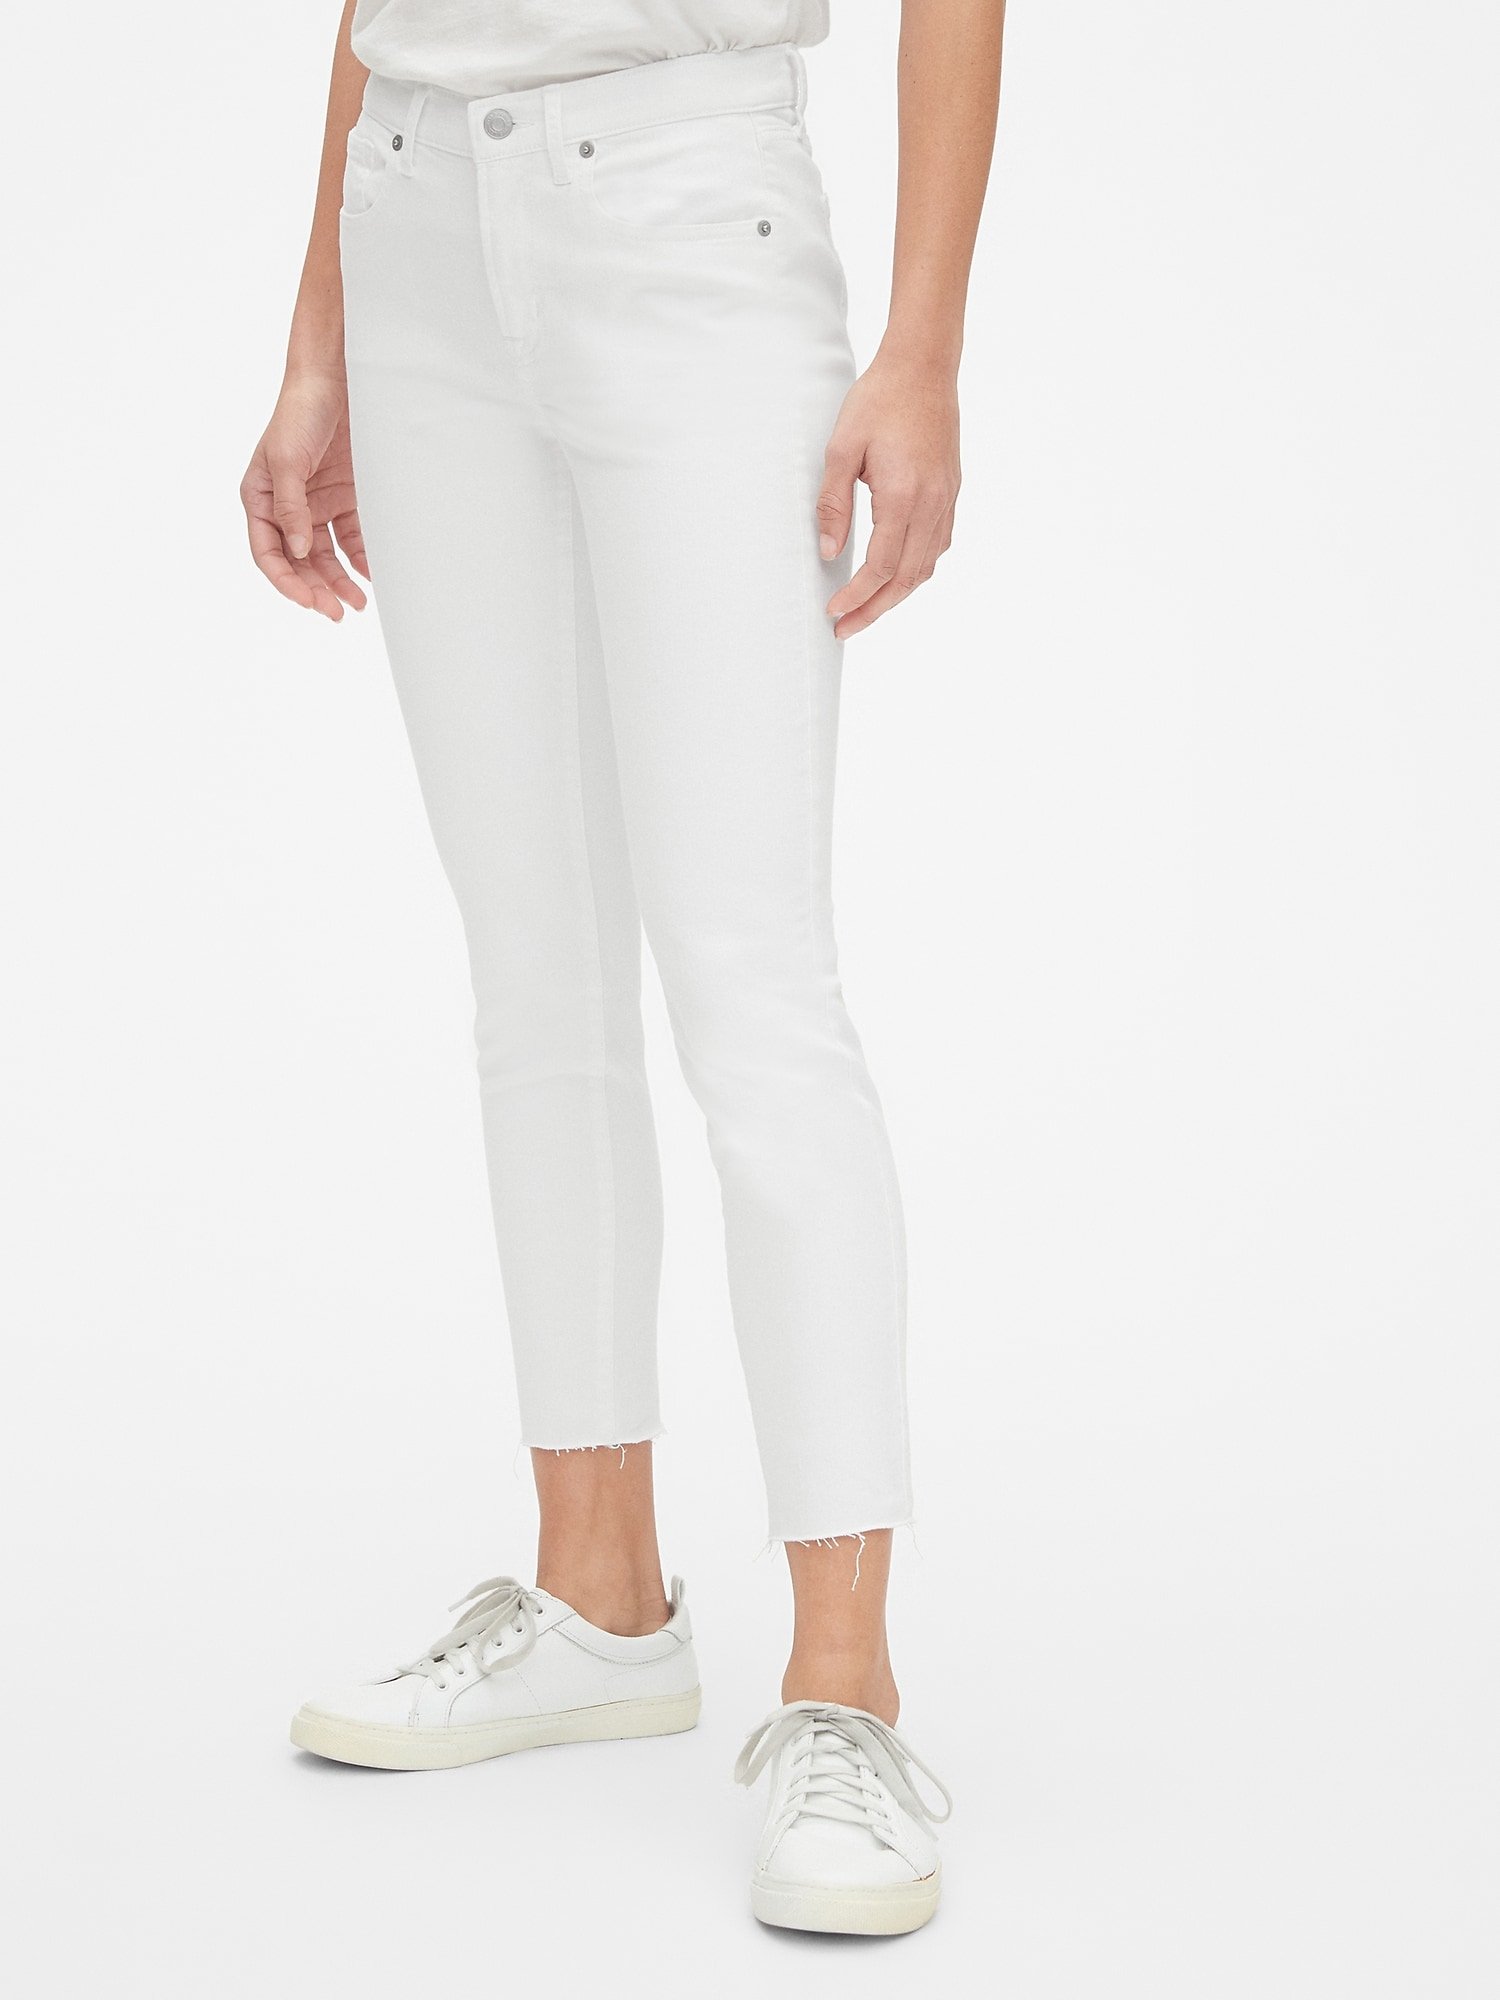 Orta Belli Skinny Jean Pantolon product image